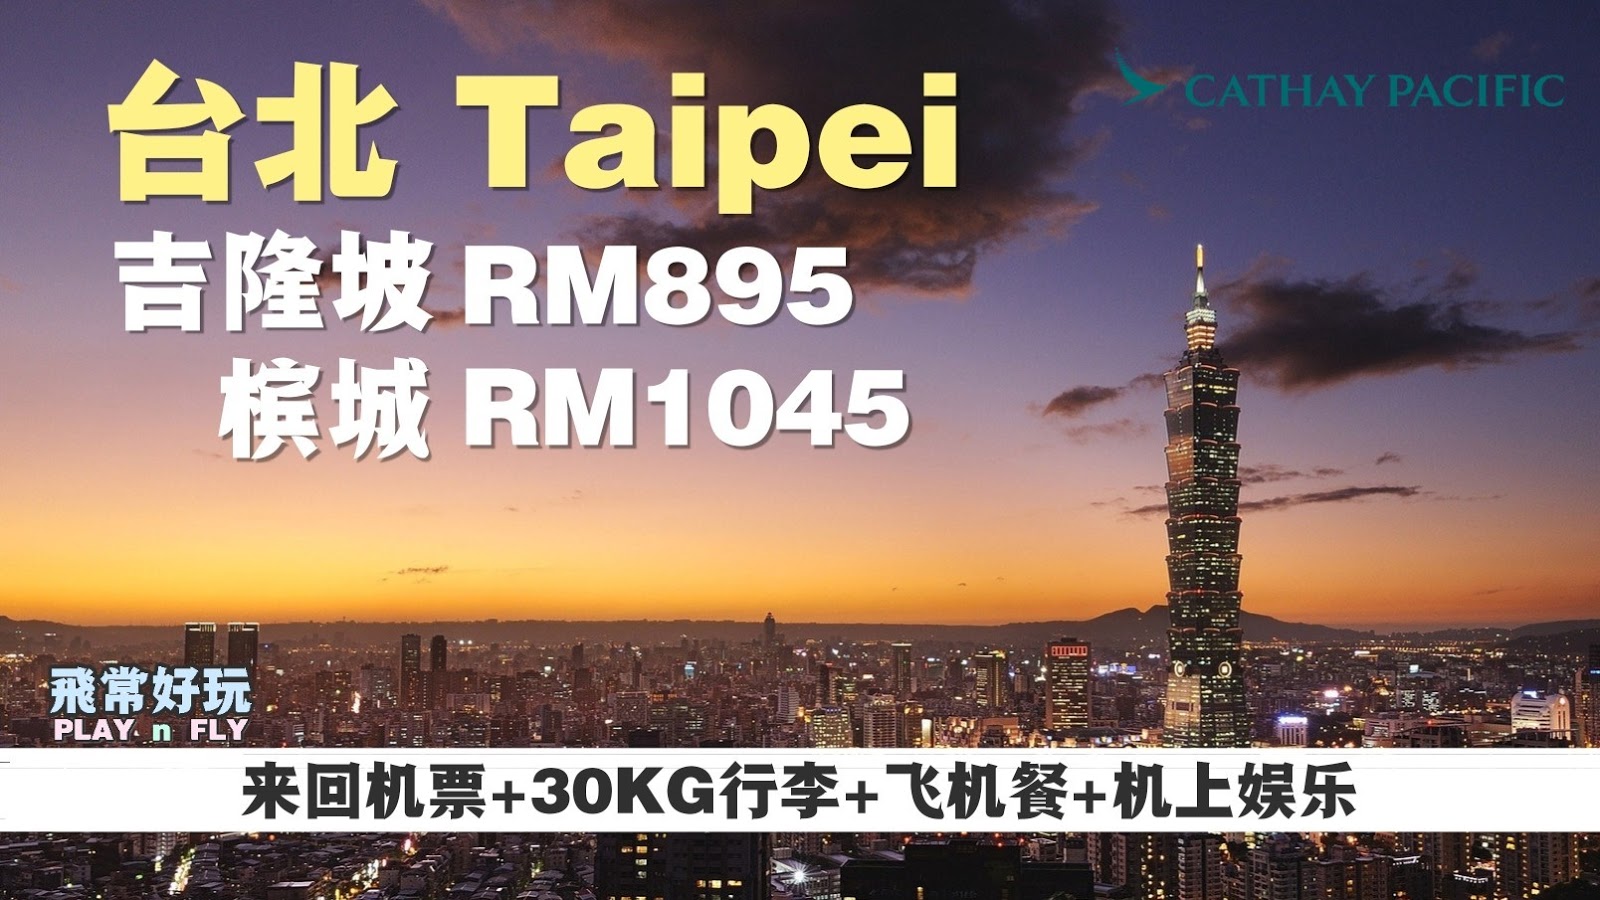 【旅游资讯】CATHAY PACIFIC飞往台北只需RM895!!